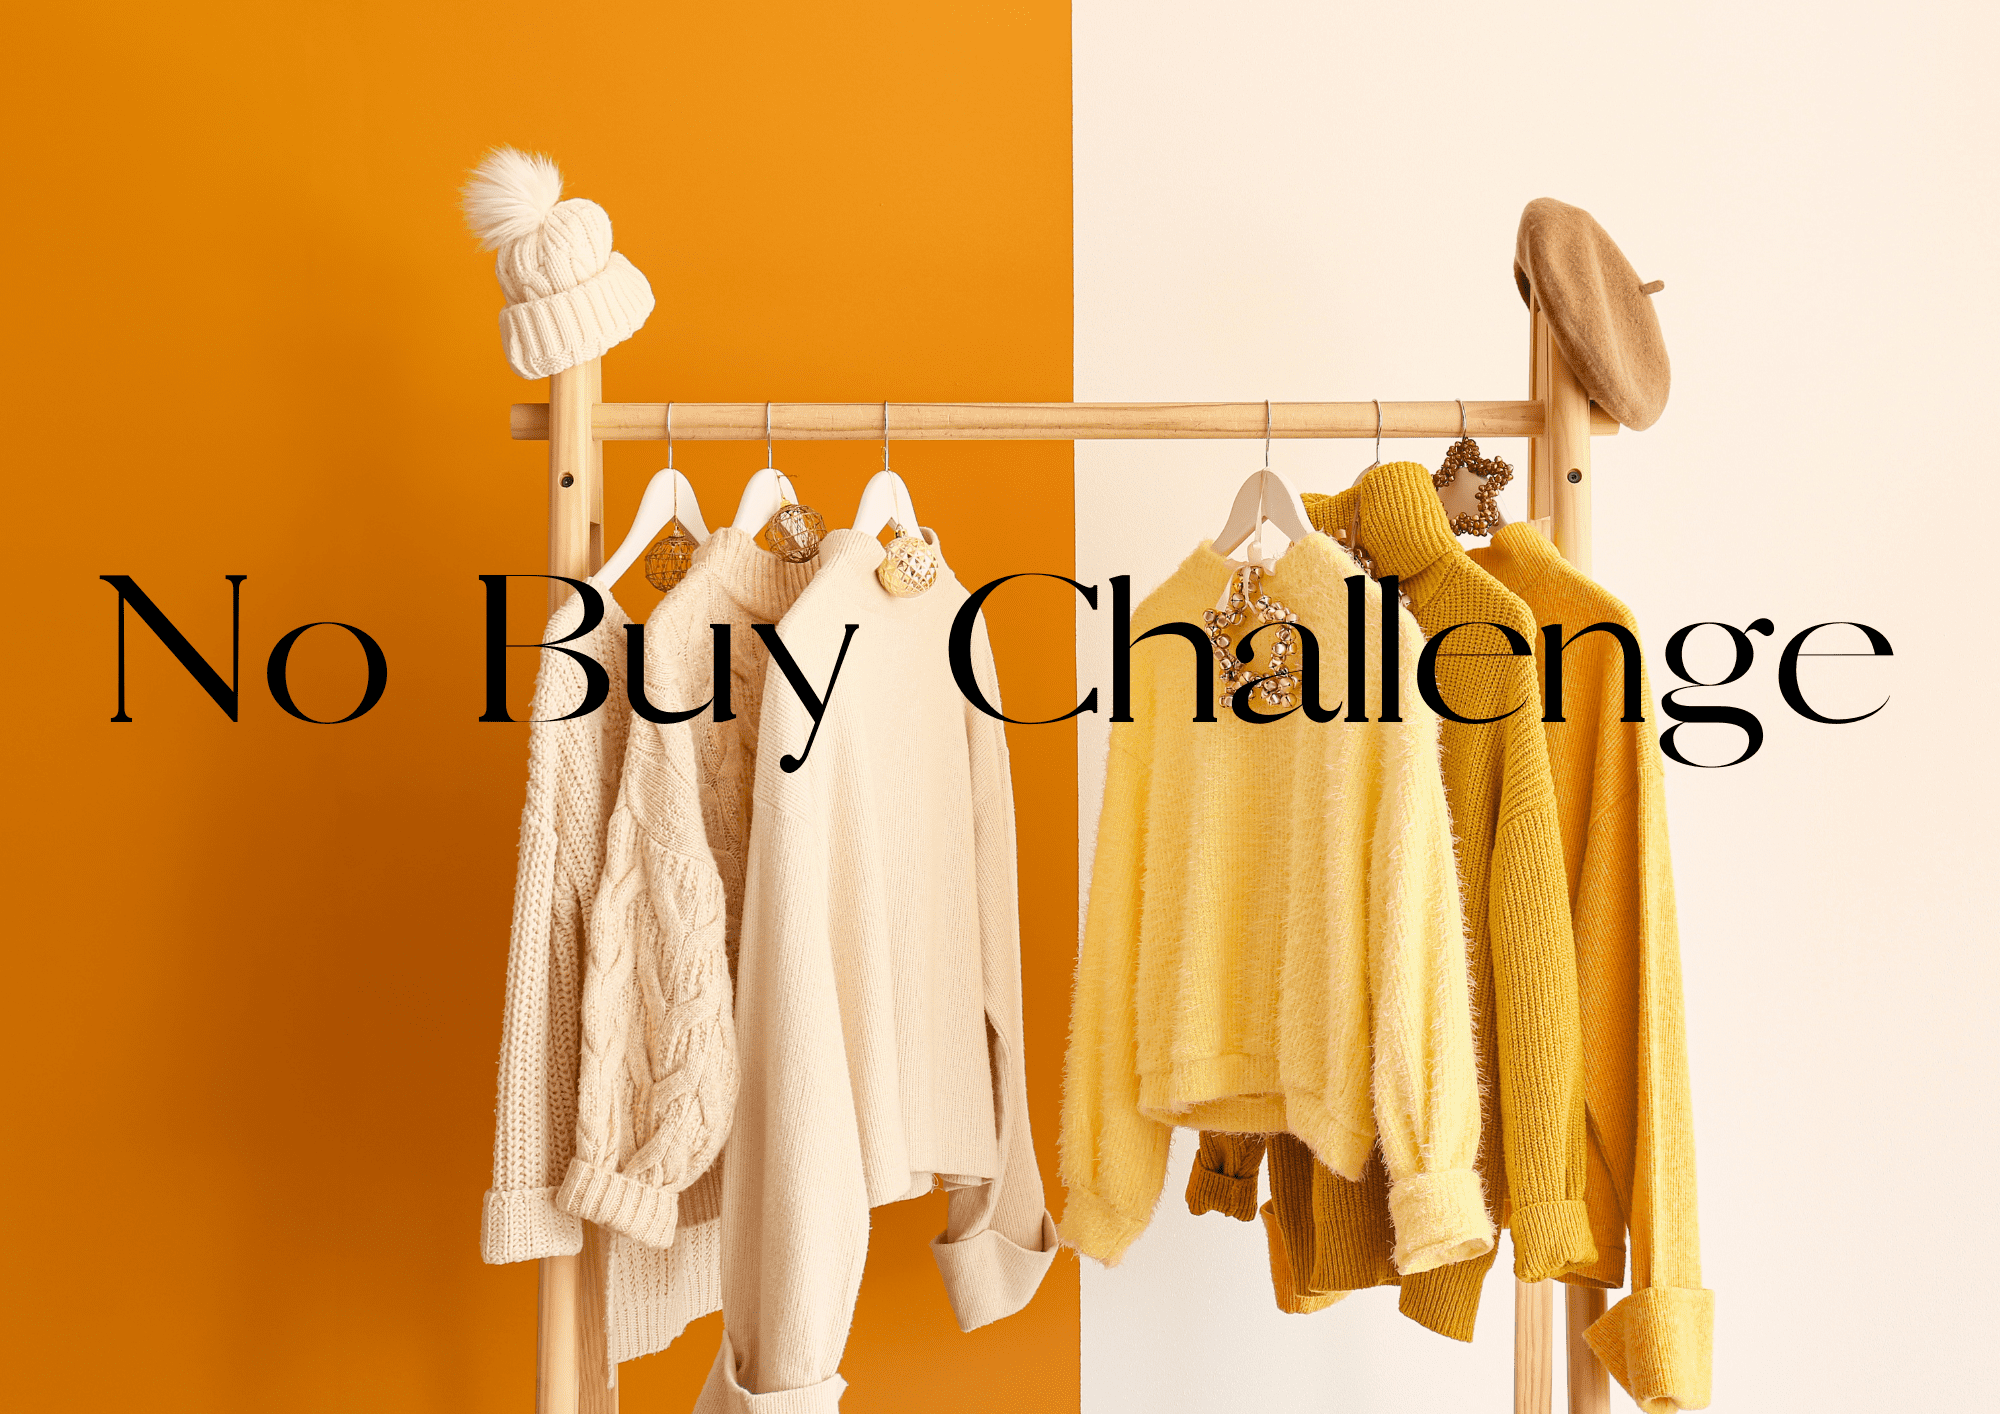 Schwarzer Text "No Buy Challenge" auf gelb weißem Hintergrund, in dem Kleidung an einer Stange hängt.